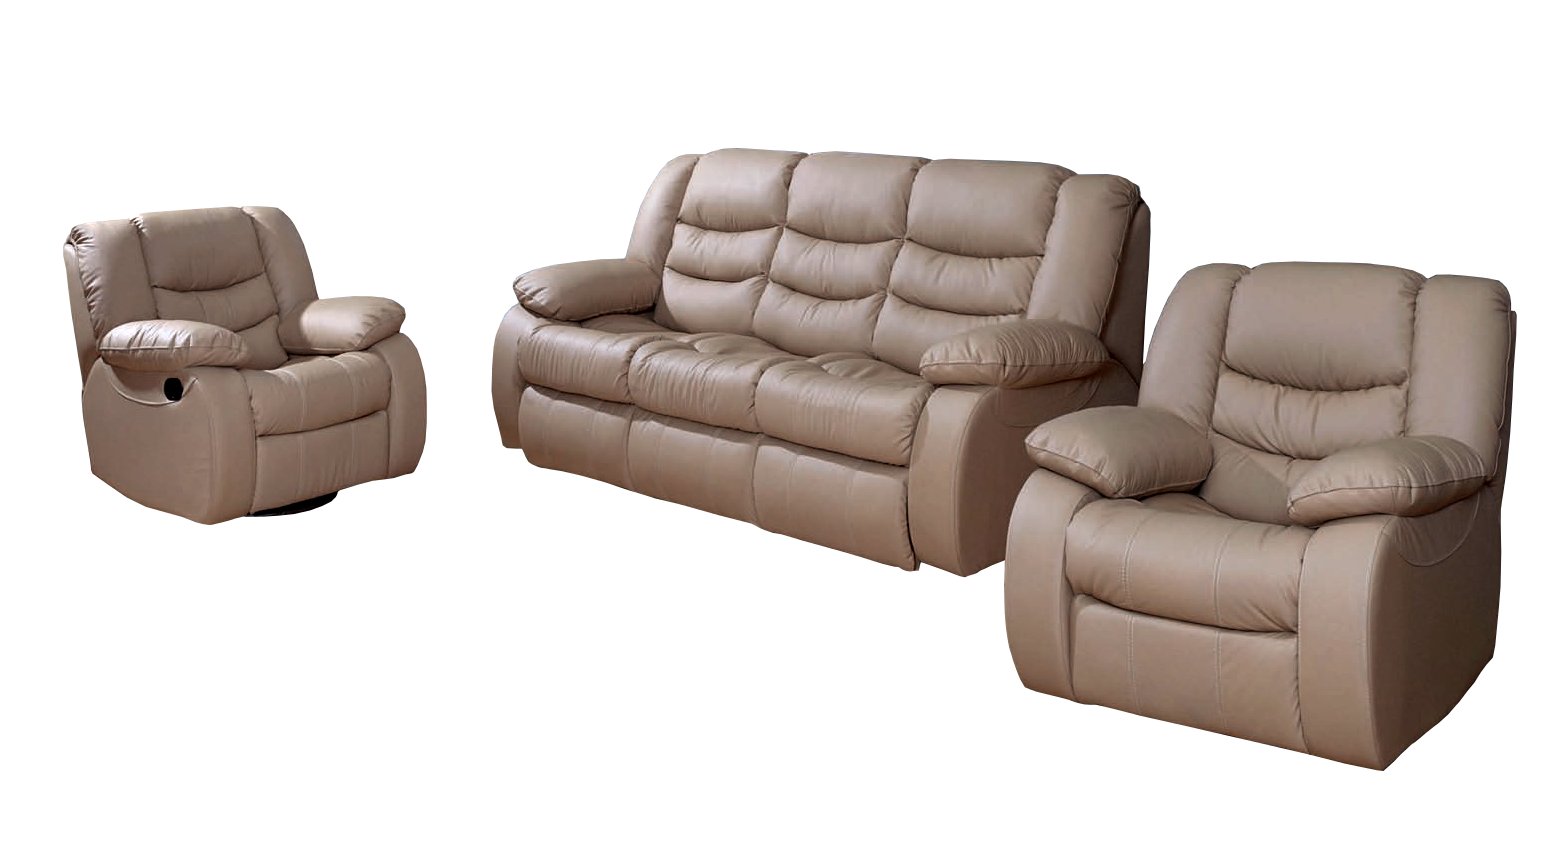 DISS sofa komfort + 2 Fotele pod funkcje RELAX - 5140 zł - Allegro.pl - 0%, Darmowa dostawa ze Smart! - Strzepcz - Stan: nowy - ID oferty: 7216577003